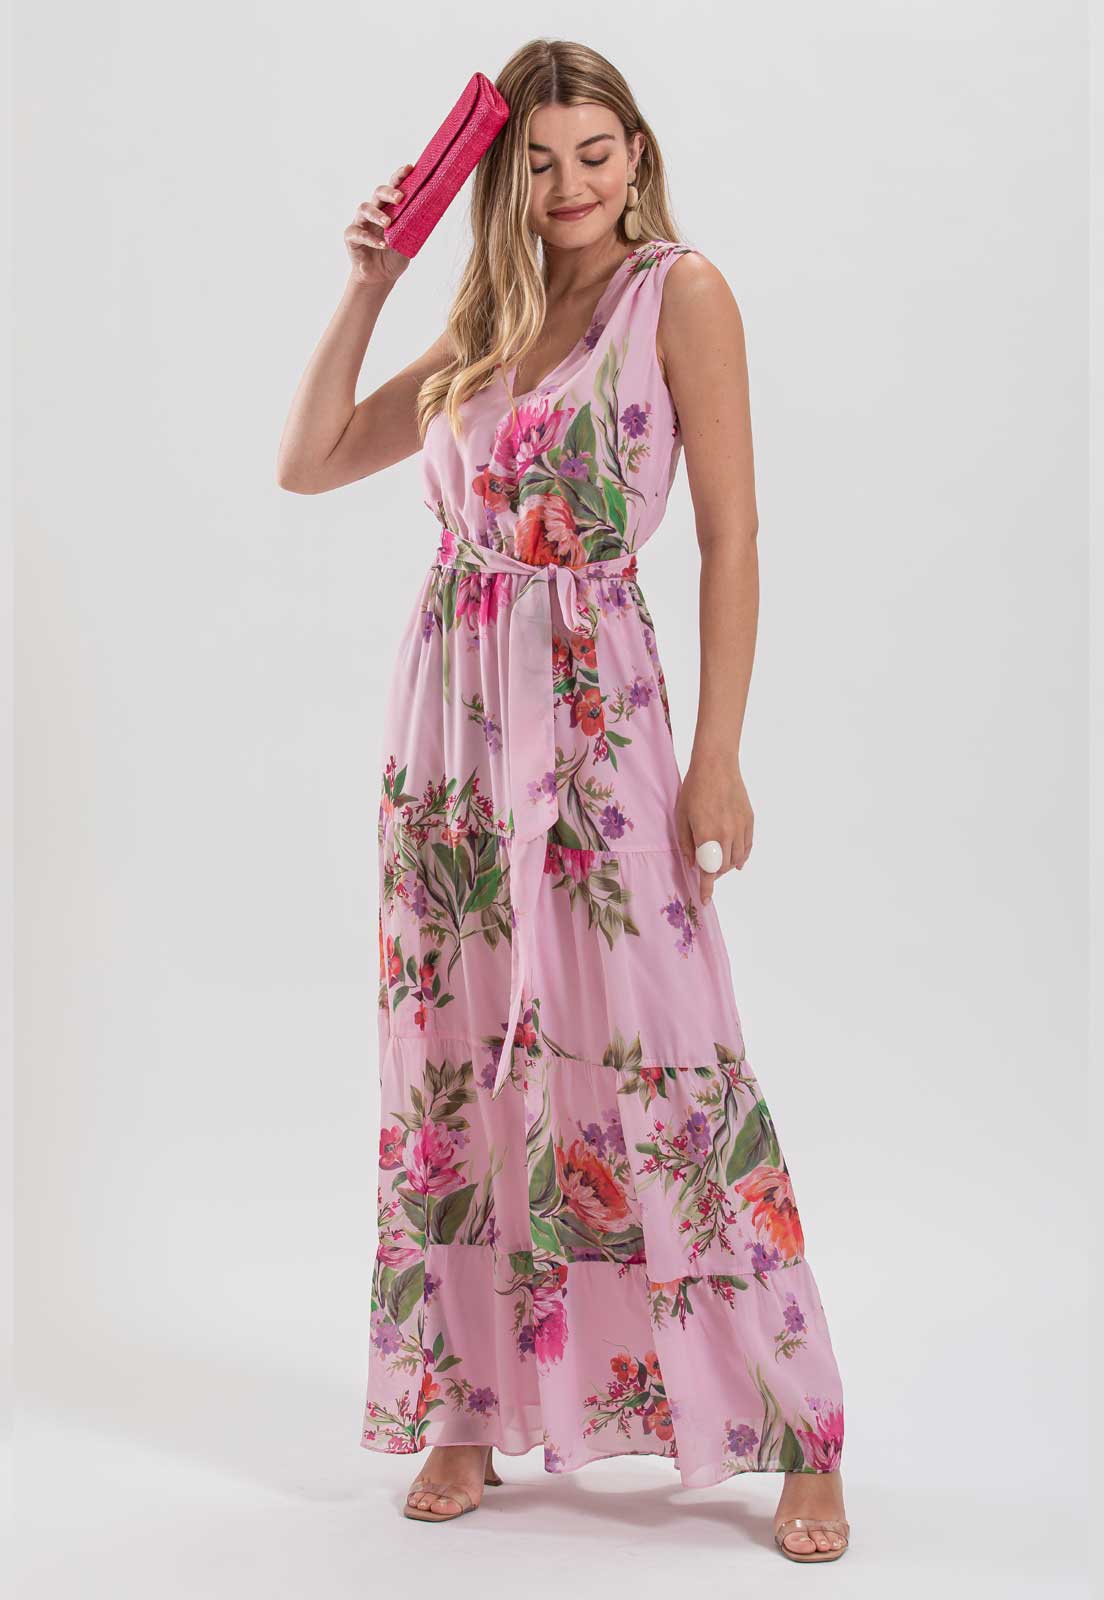 Vestido estampado floral rosa  - Ref. 2648